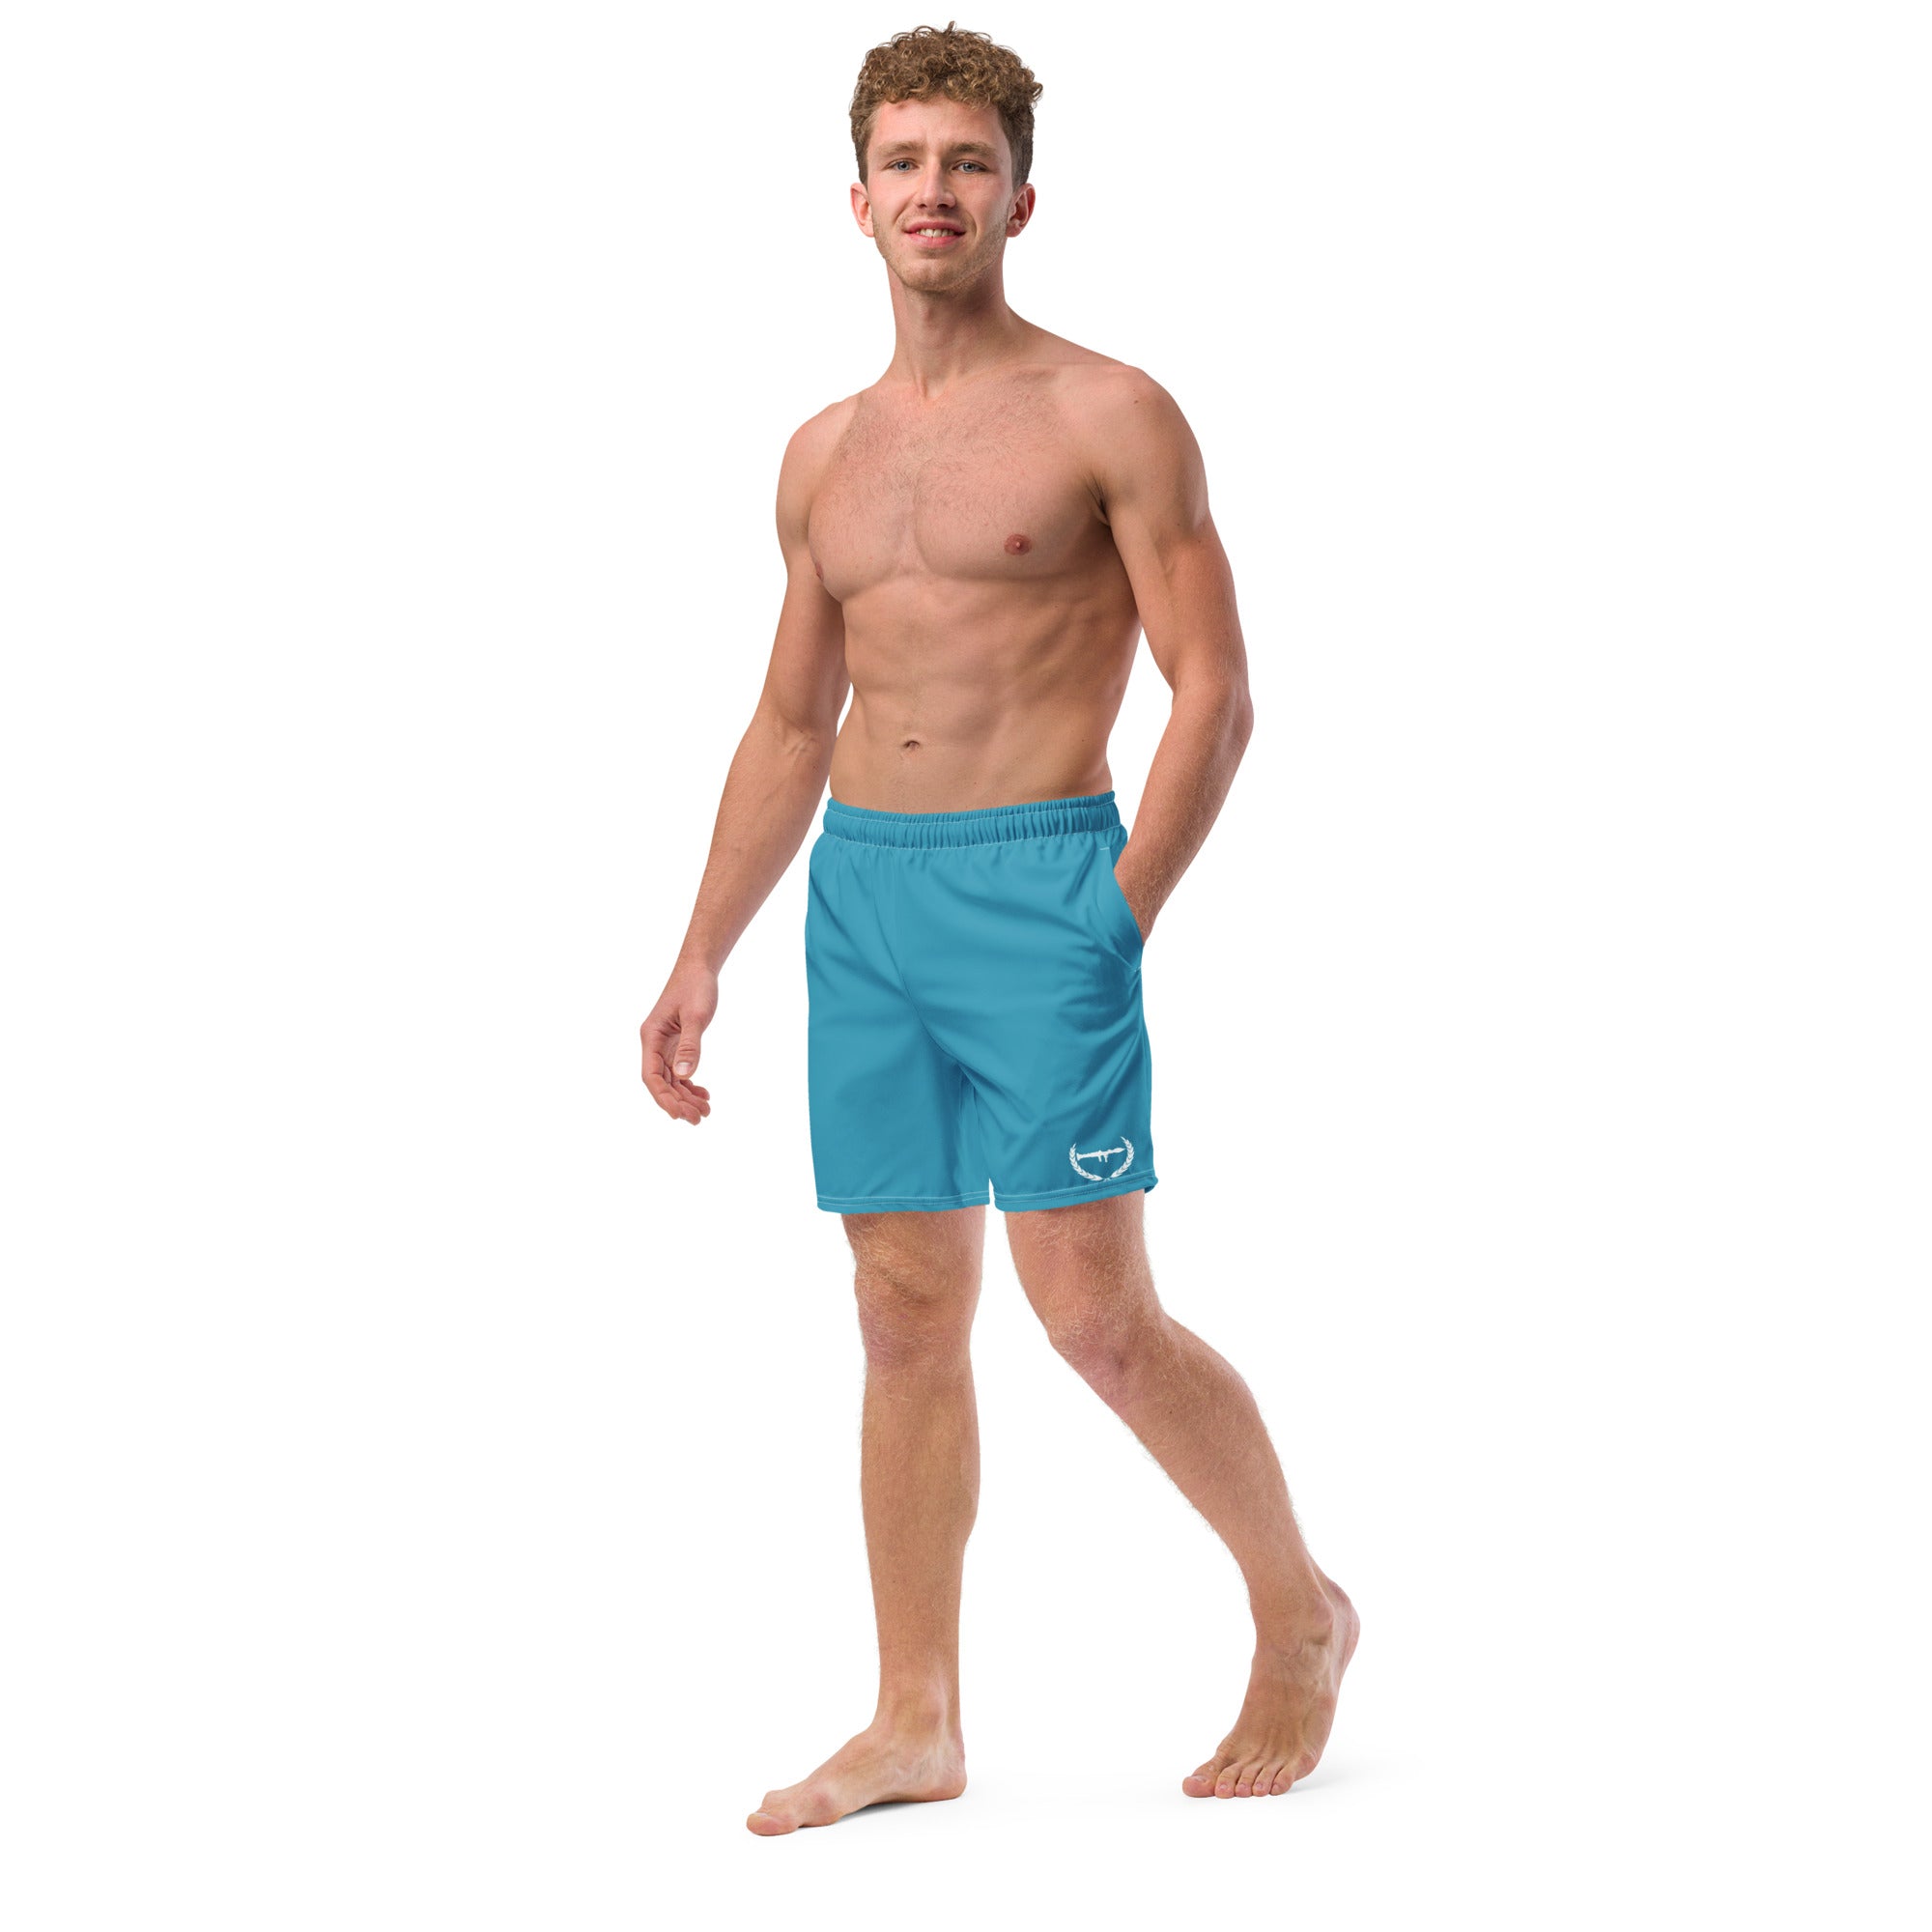 Premiumjunk Logo Men's swim trunks